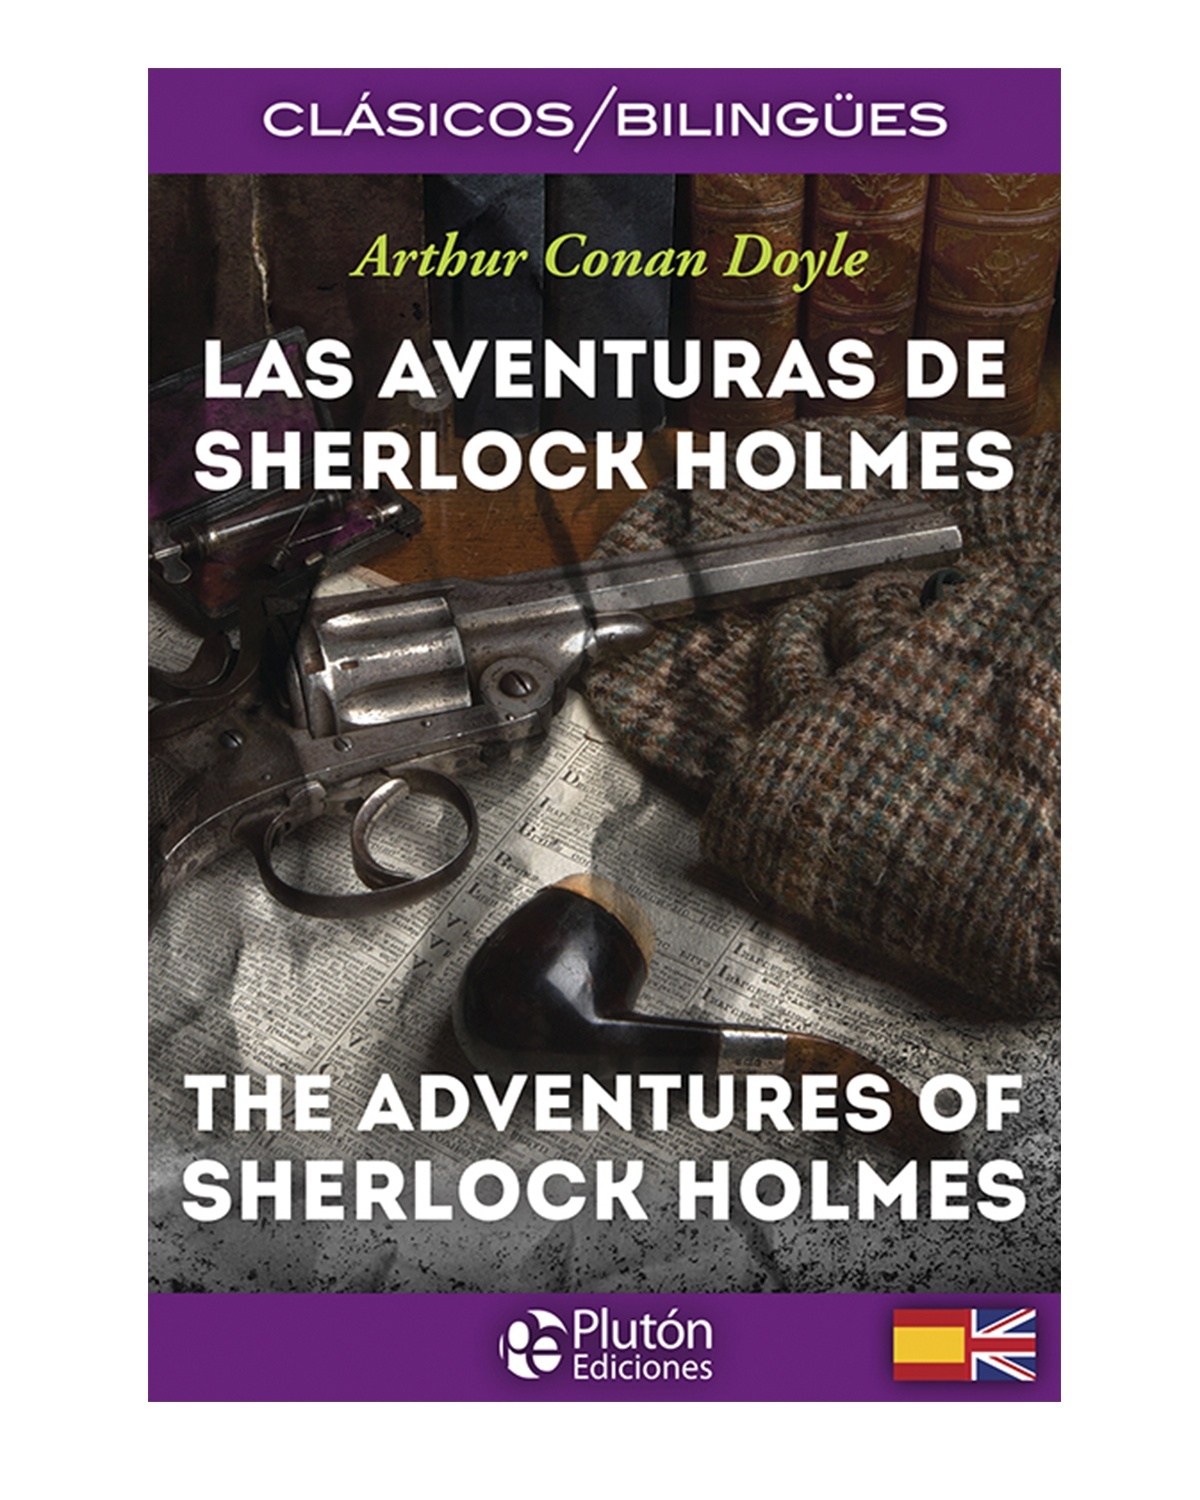 Las aventuras de Sherlock Holmes / The Adventures of Sherlock Holmes1023